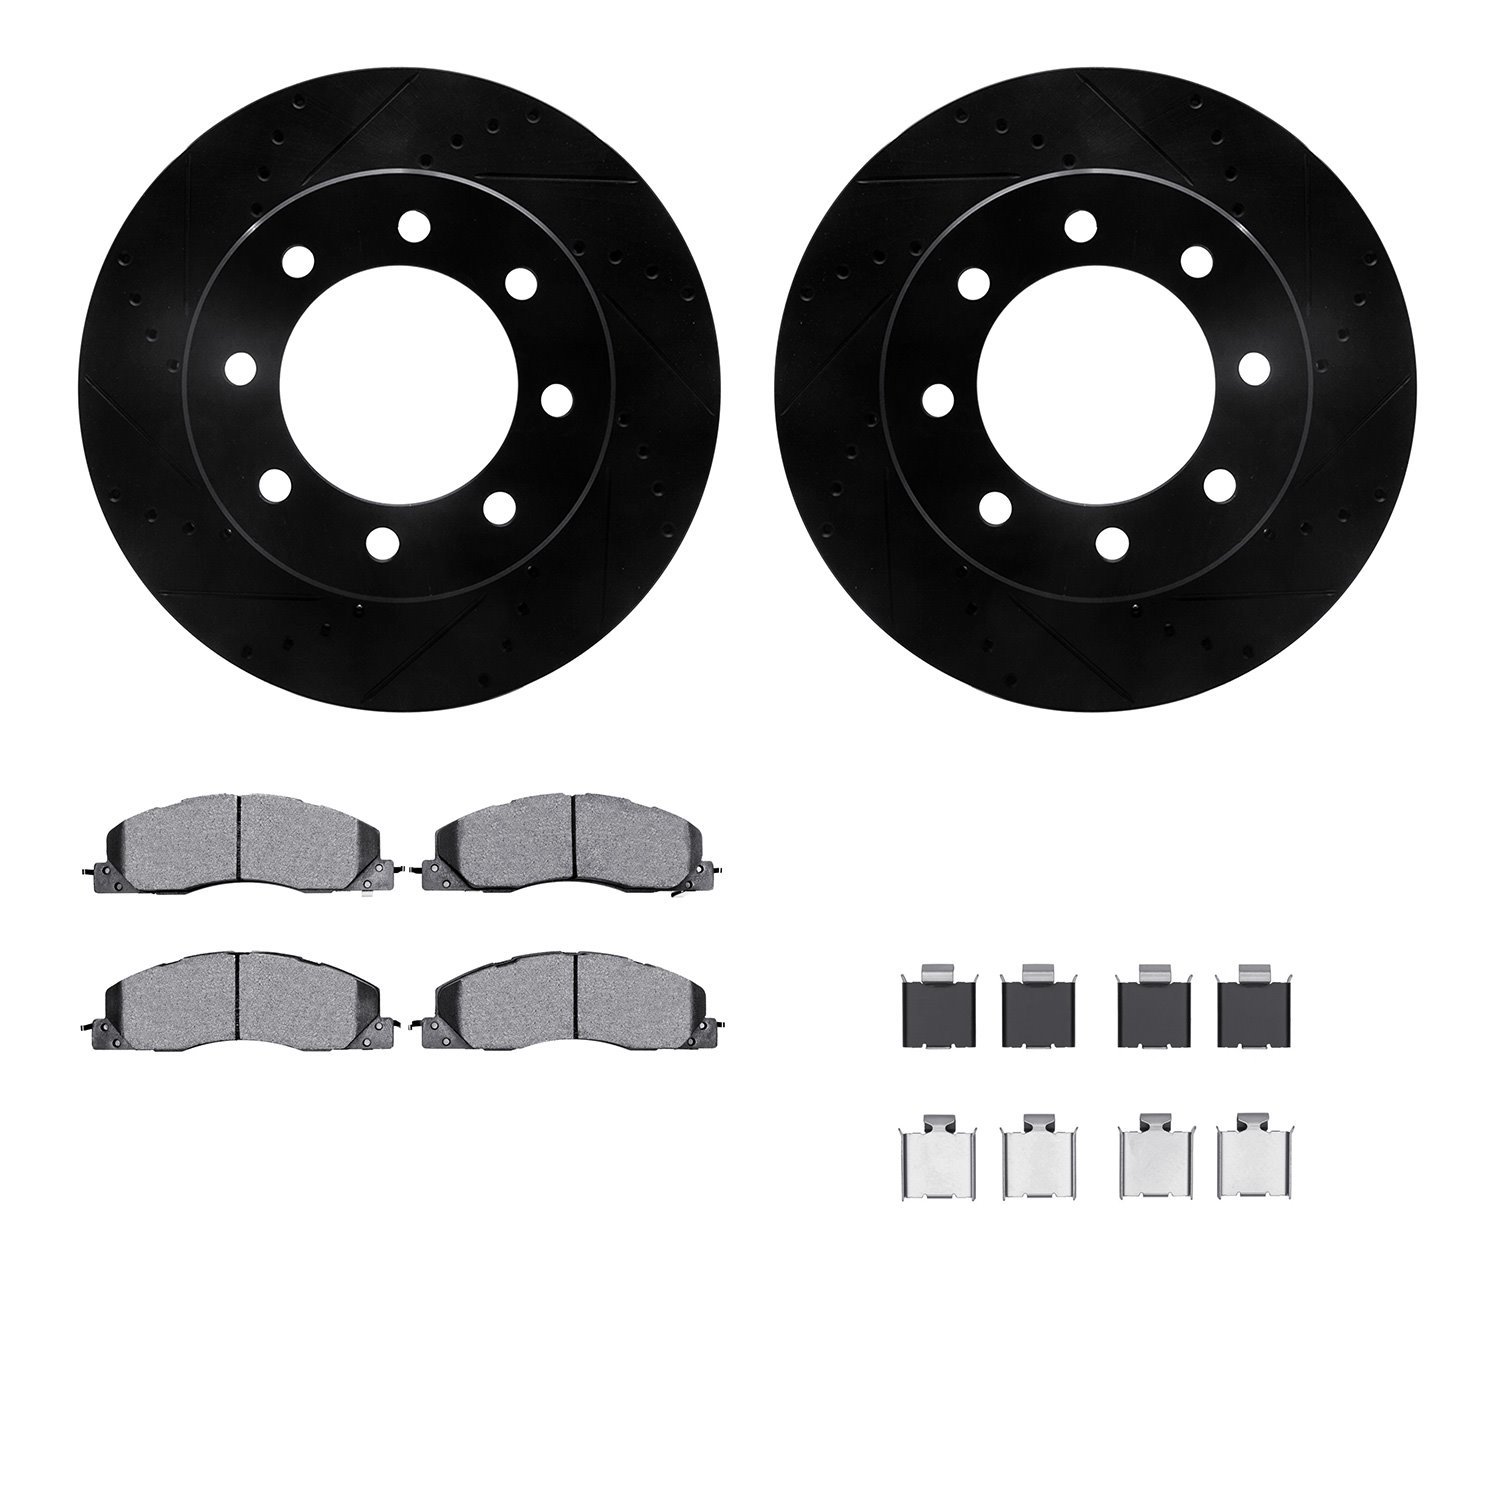 8512-40486 Drilled/Slotted Brake Rotors w/5000 Advanced Brake Pads Kit & Hardware [Black], 2009-2018 Mopar, Position: Front